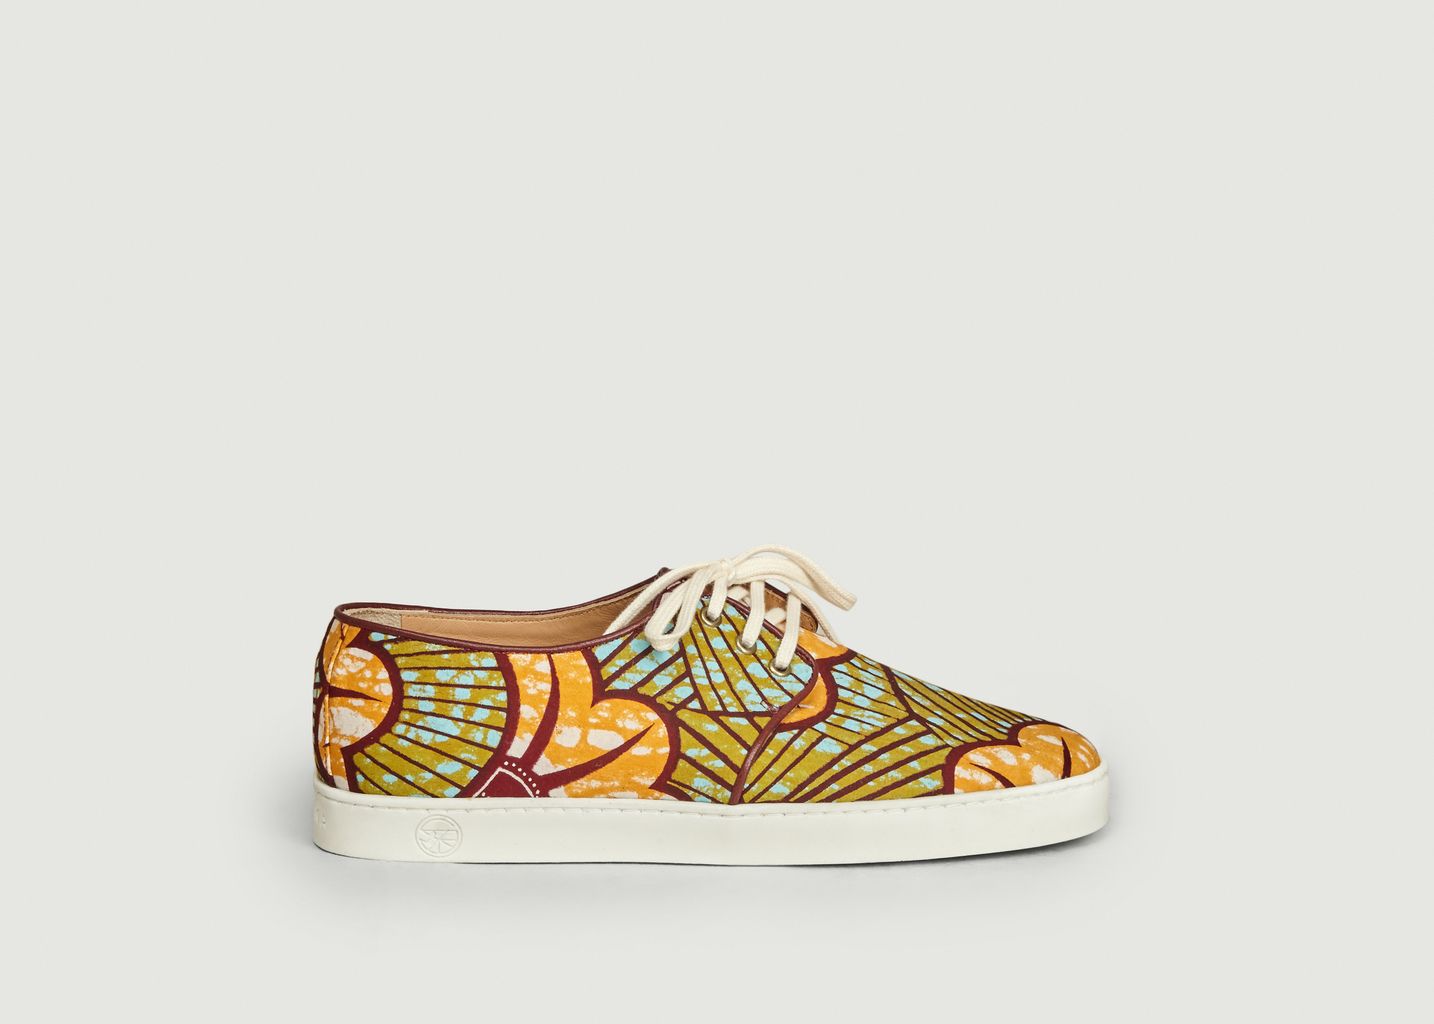 Sneakers en toile wax Constantine - Panafrica